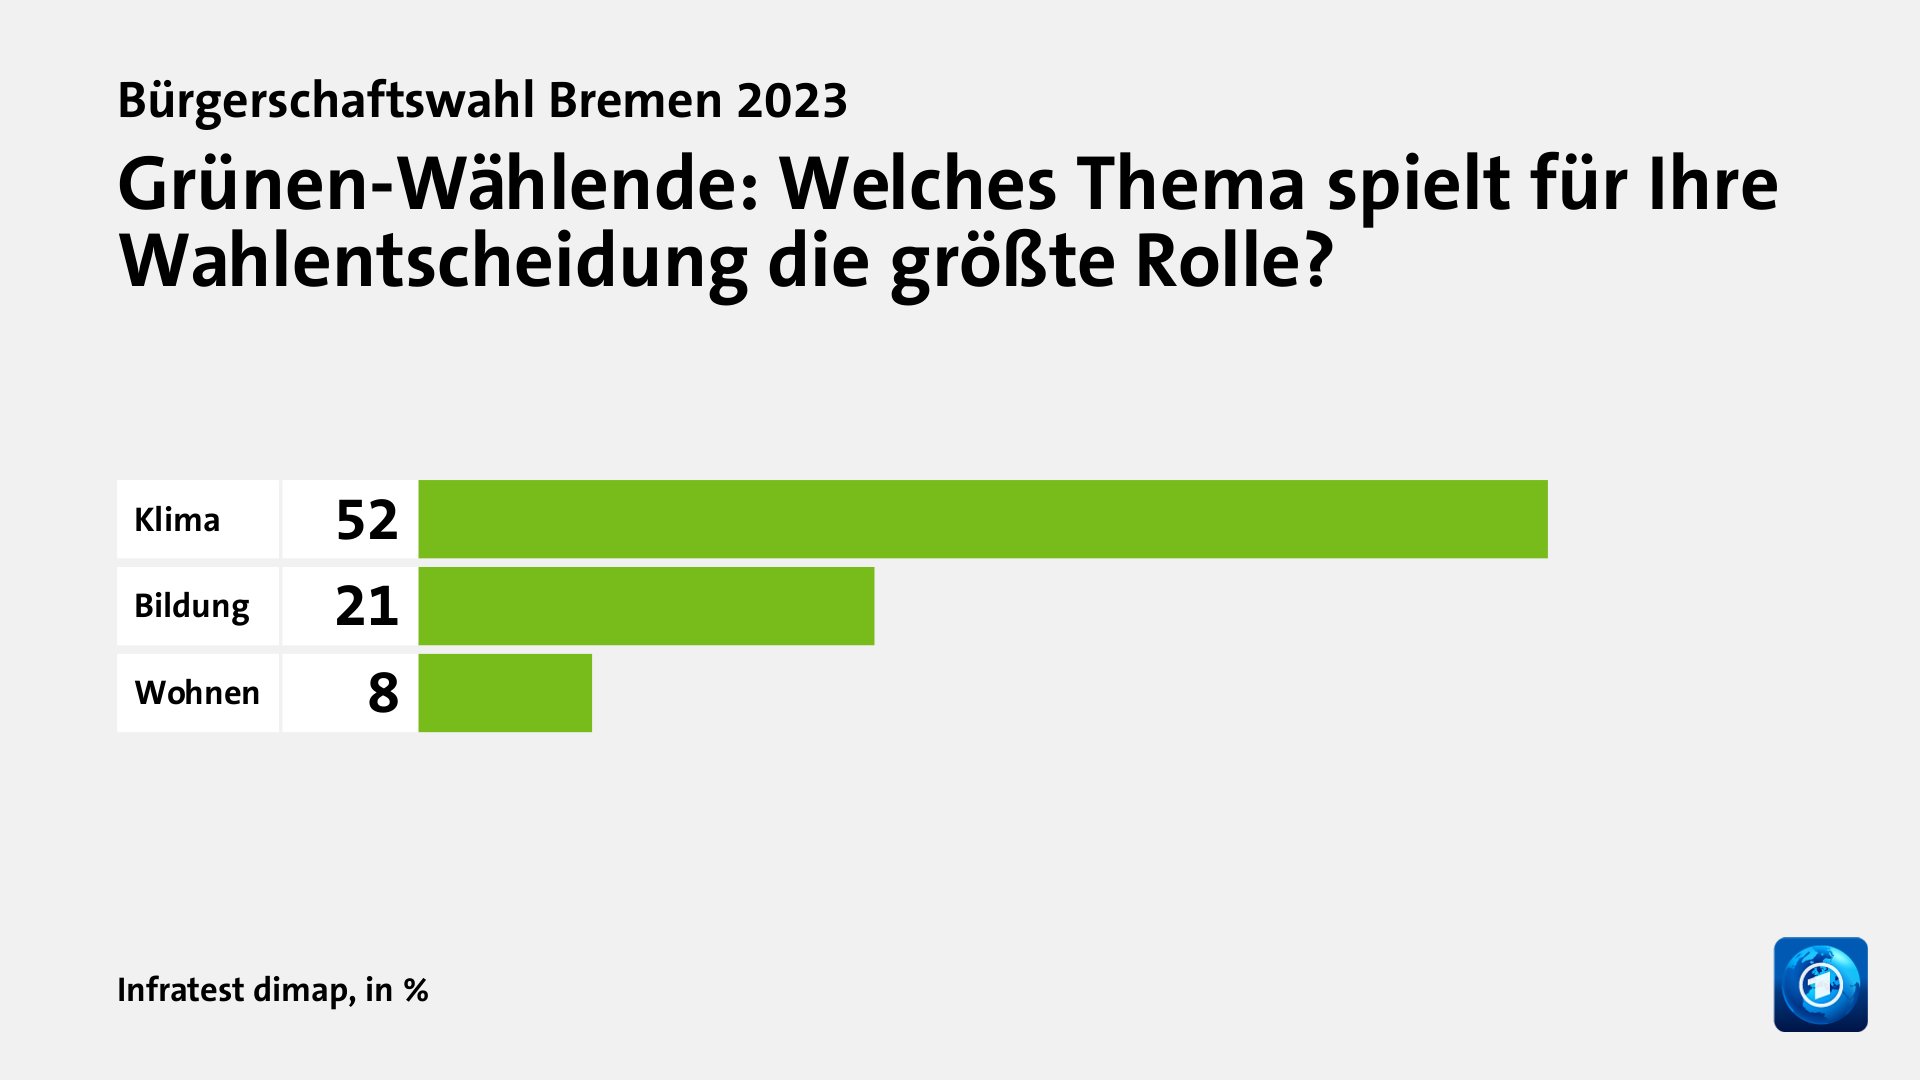 Grünen-Wählende: Welches Thema spielt für Ihre Wahlentscheidung die größte Rolle?, in %: Klima 52, Bildung 21, Wohnen 8, Quelle: Infratest dimap